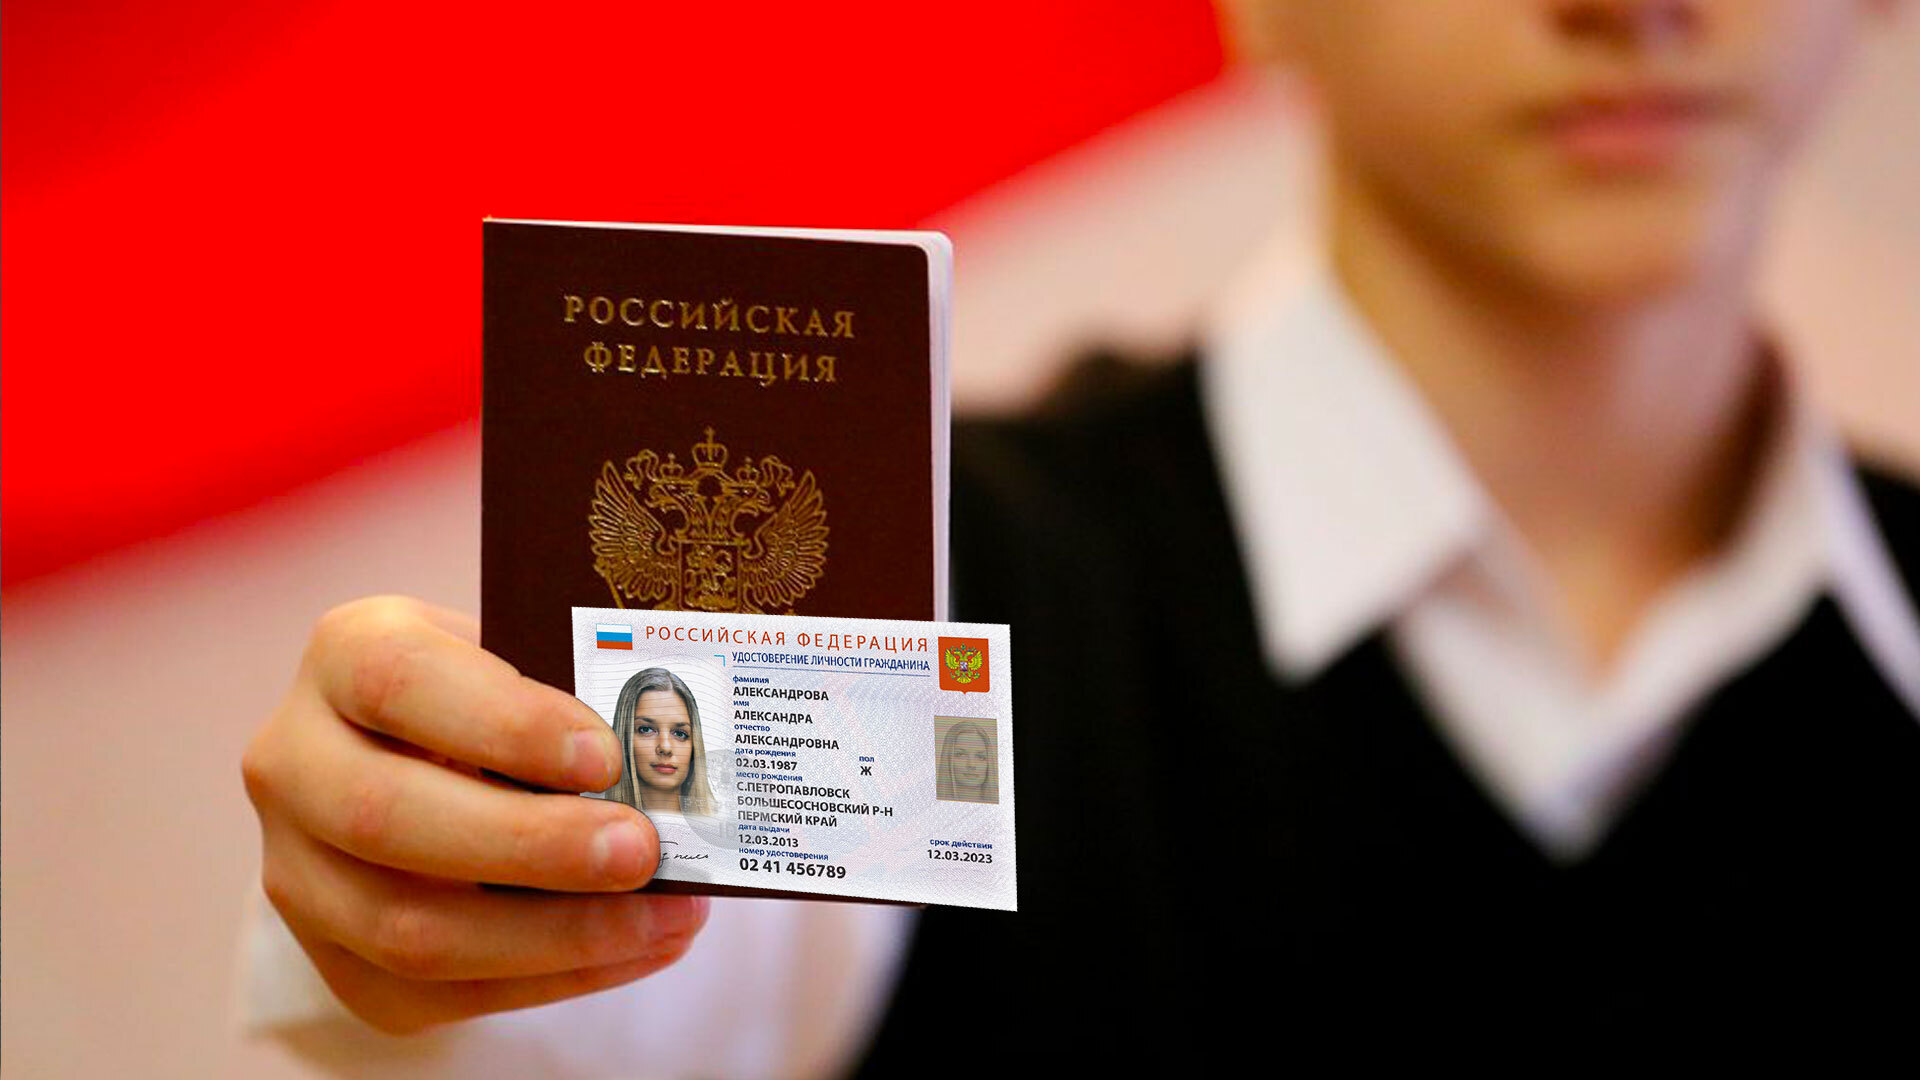 Система электронных паспортов граждан рф